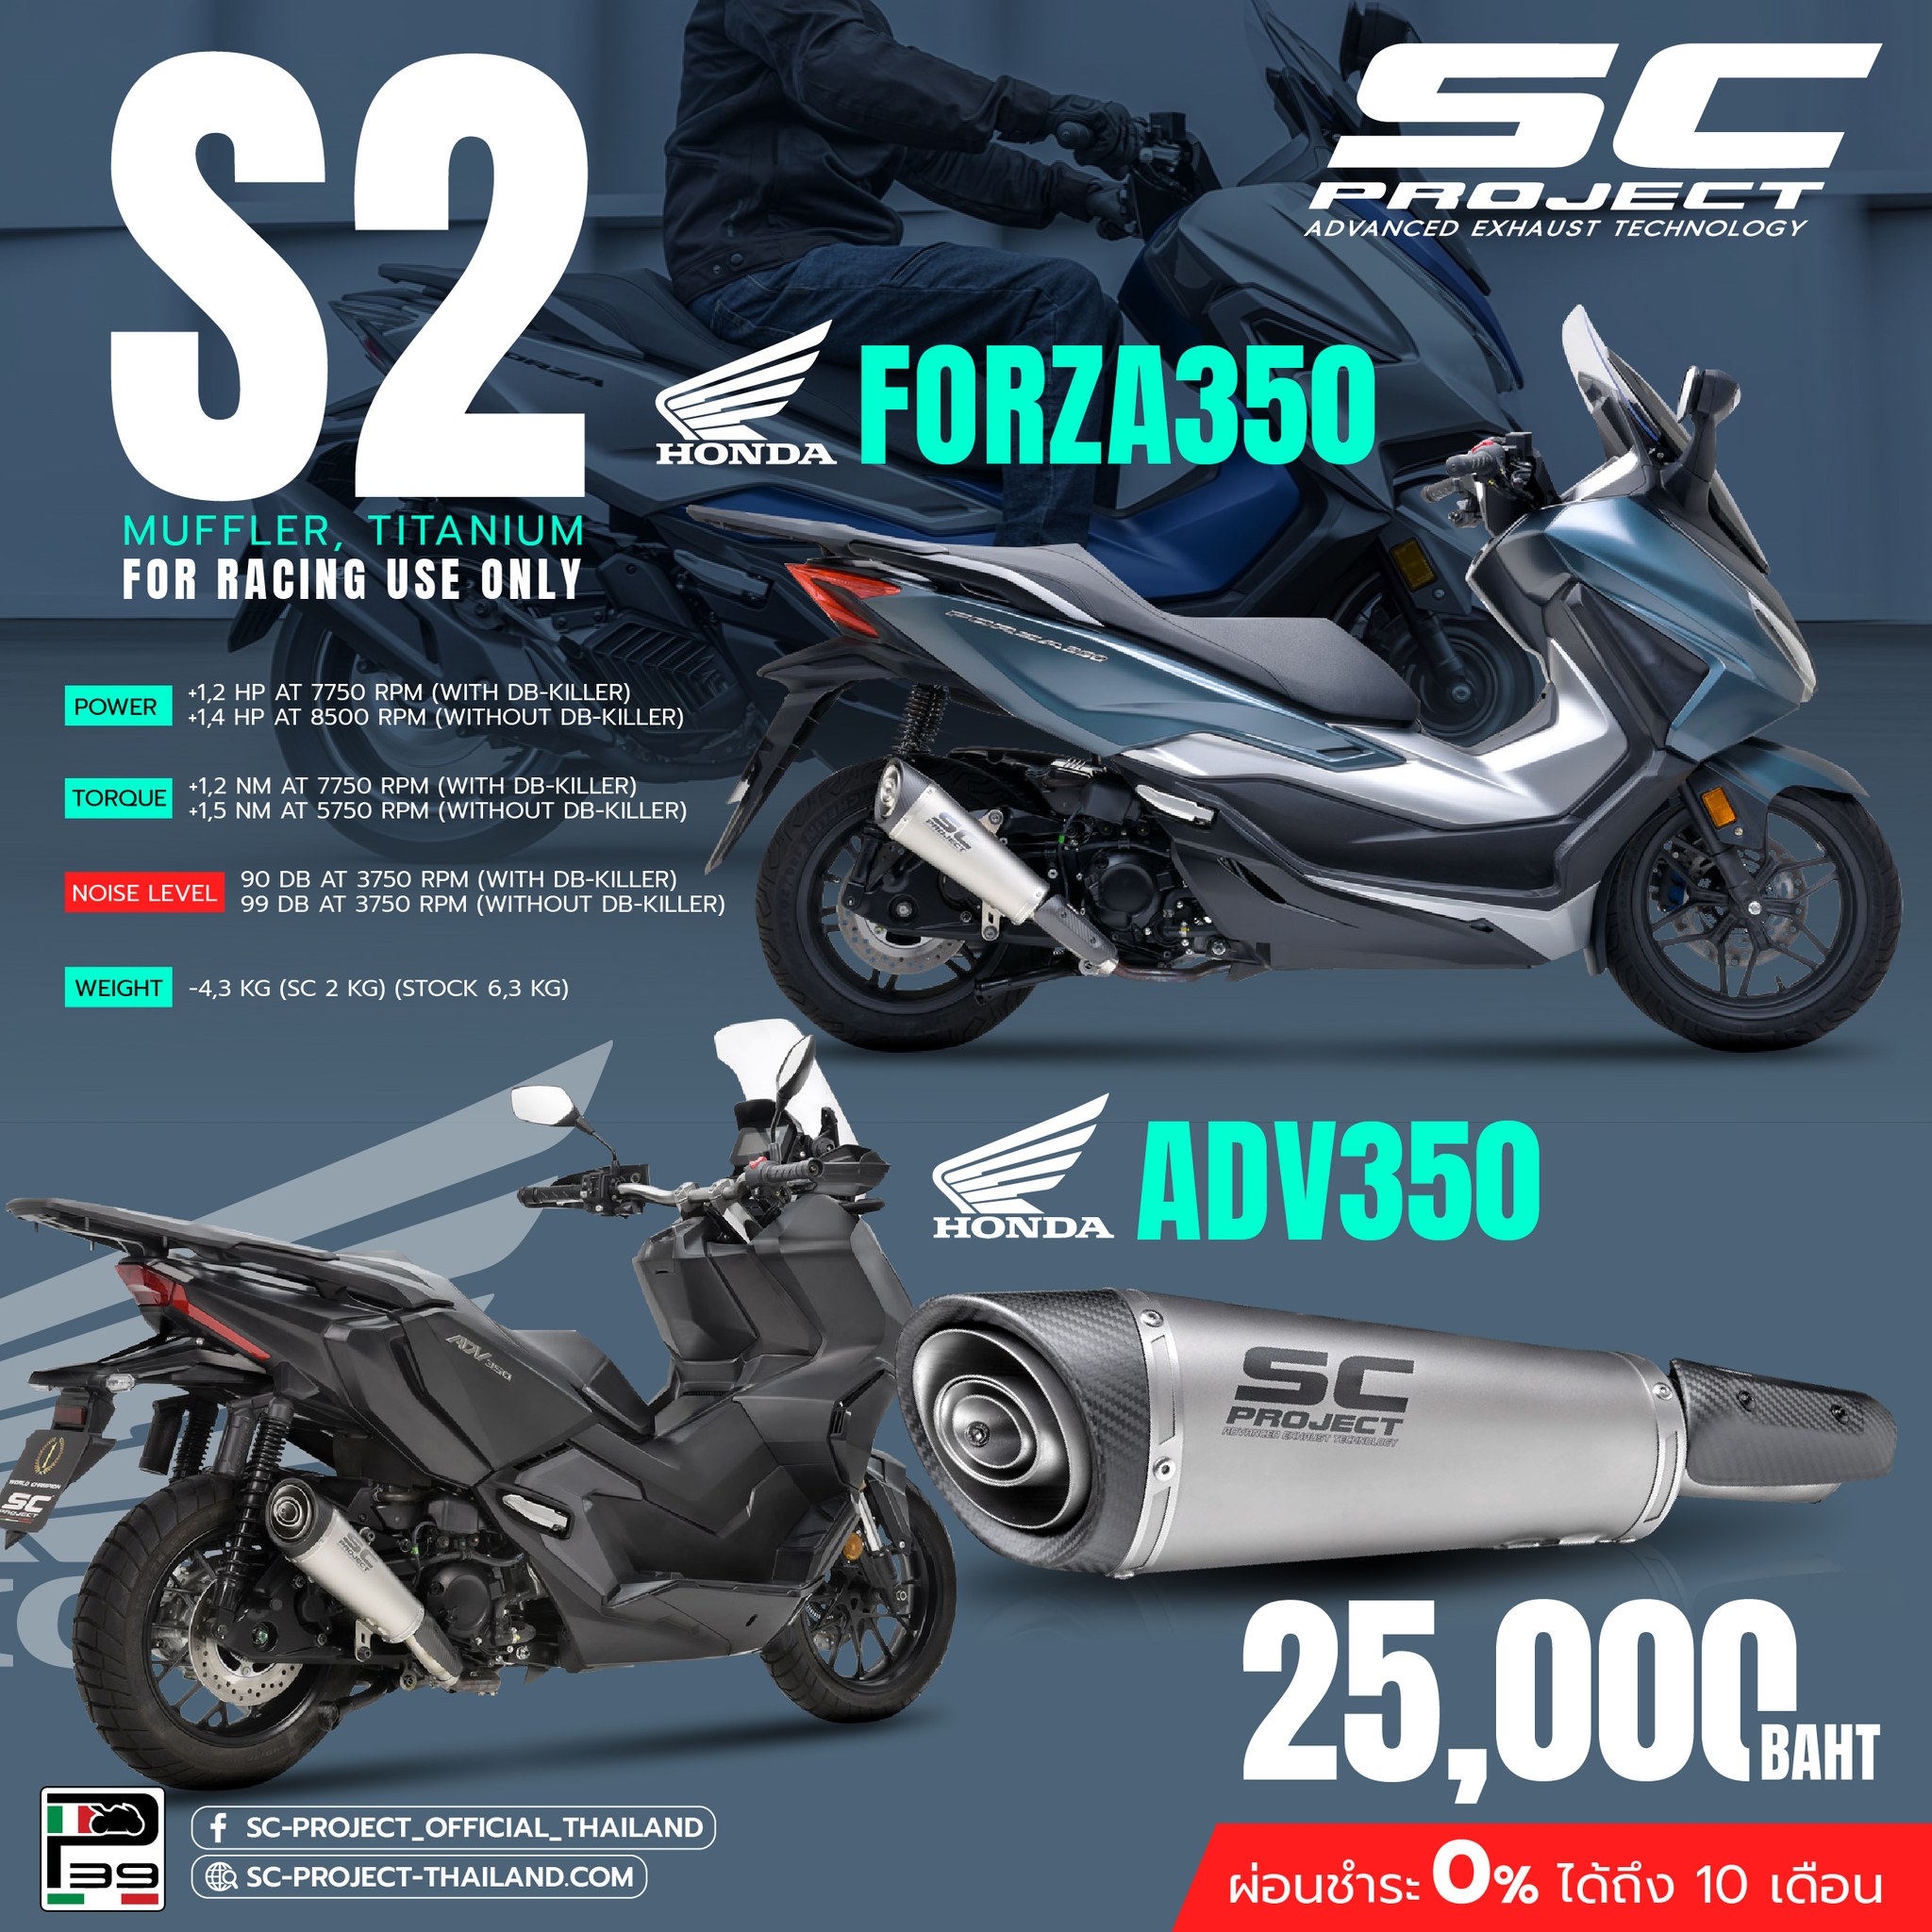 ท่อ SC-Project รุ่น S2 , Slip-On ตรงรุ่น Honda Forza 350 และ Honda ADV 350